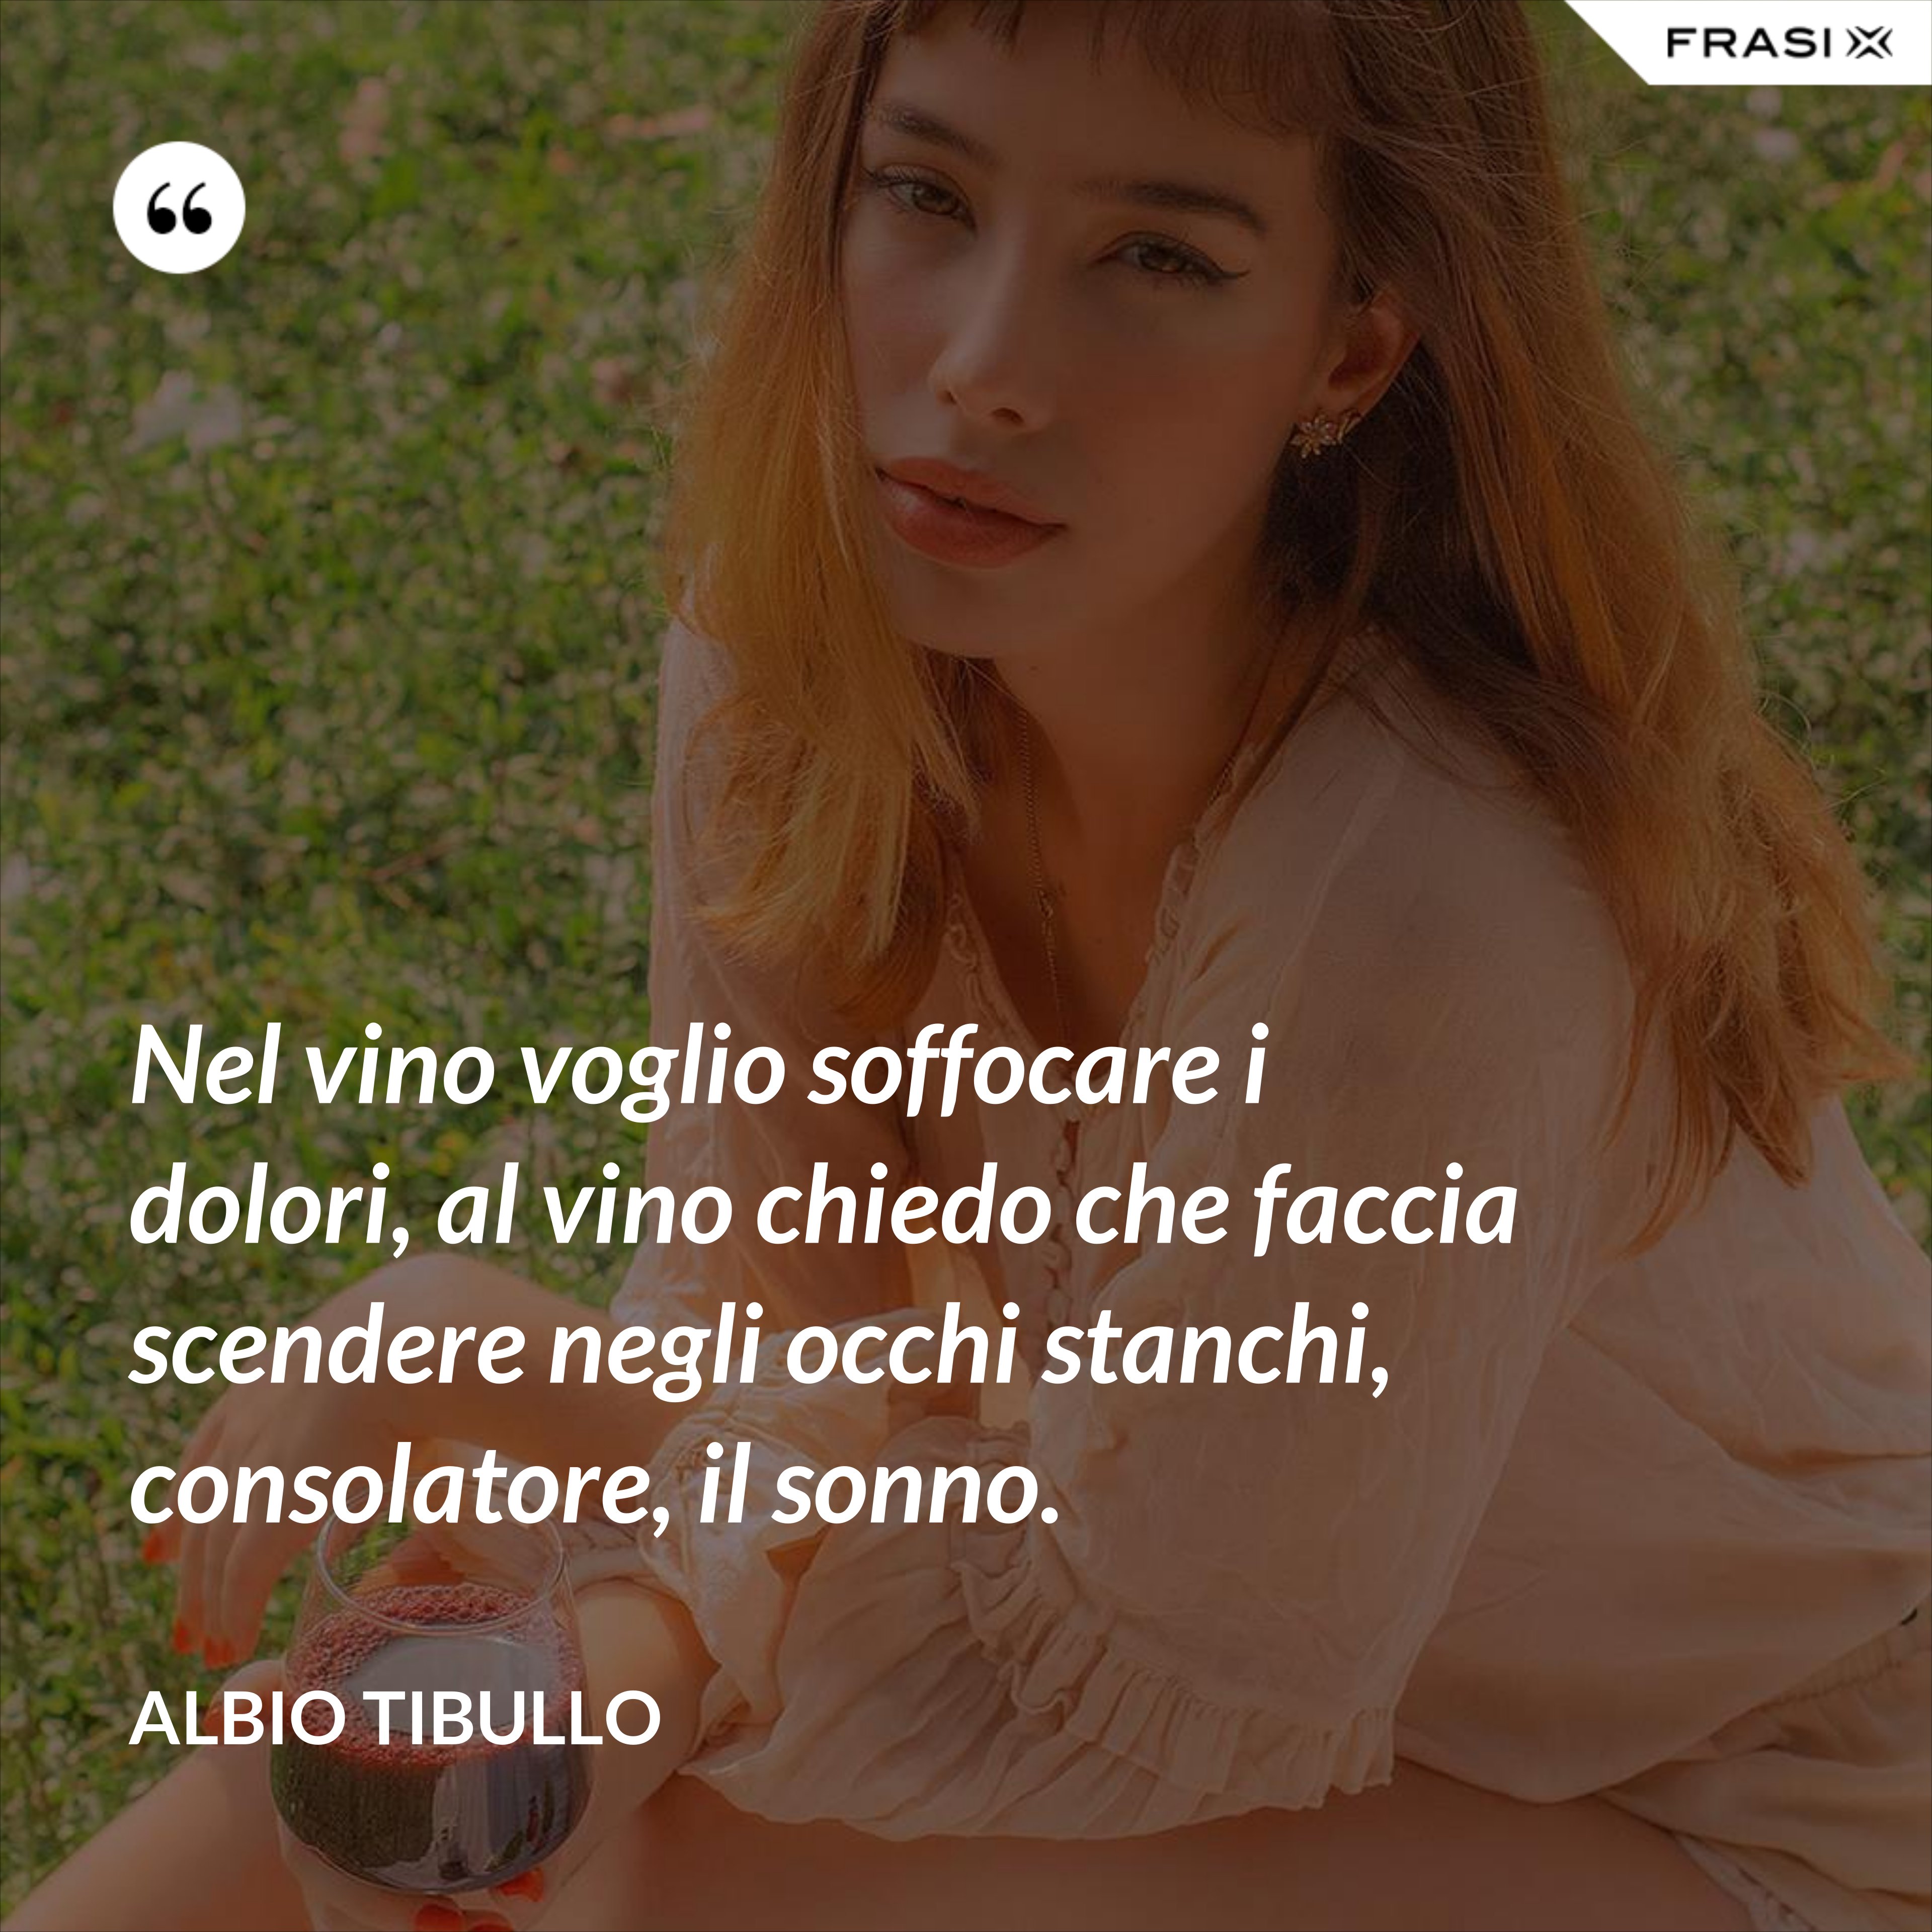 Nel vino voglio soffocare i dolori, al vino chiedo che faccia scendere negli occhi stanchi, consolatore, il sonno. - Albio Tibullo